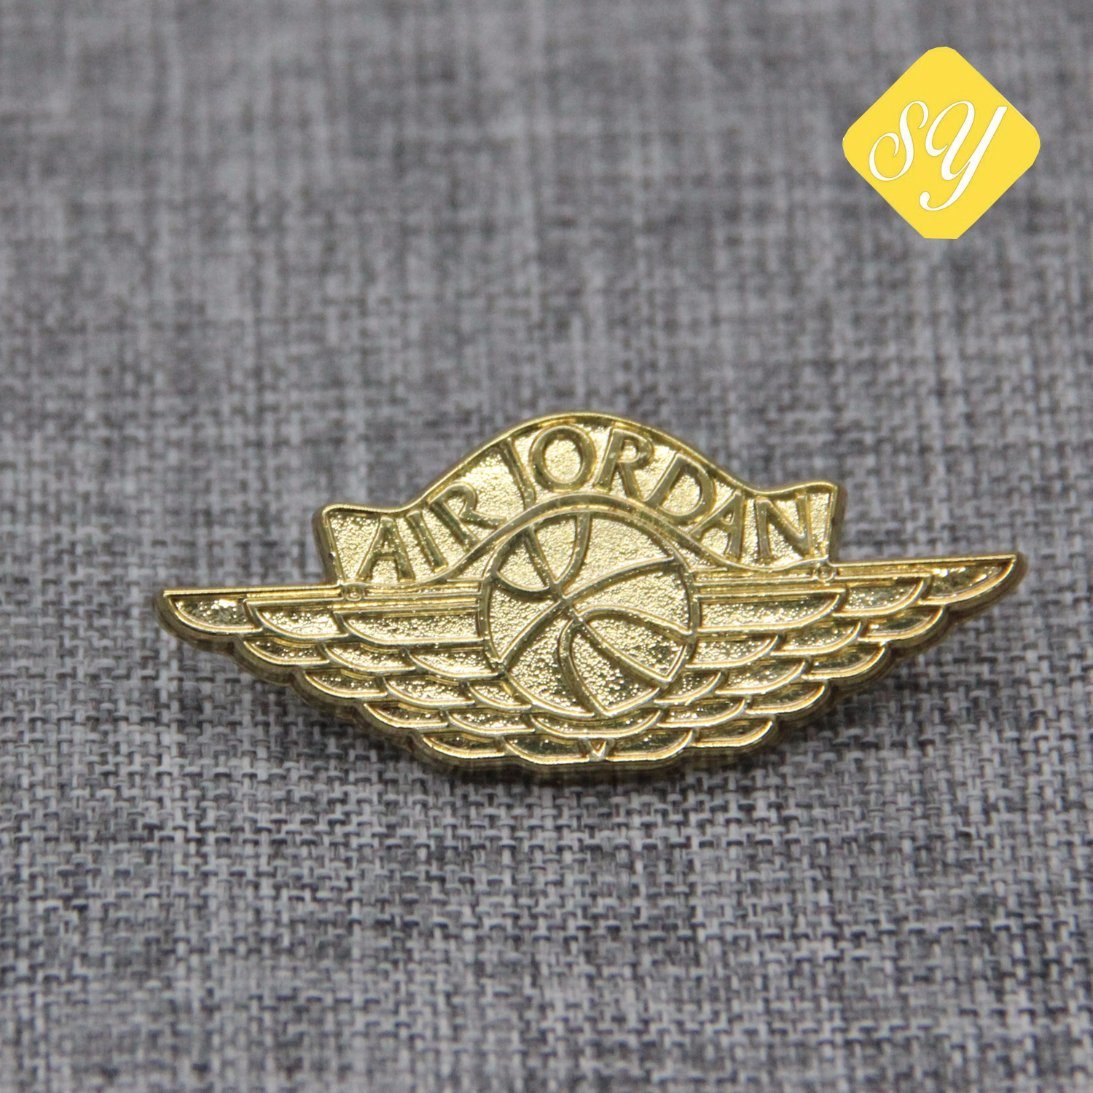 Soft Enamel Honor Custom Gold Lapel Pin